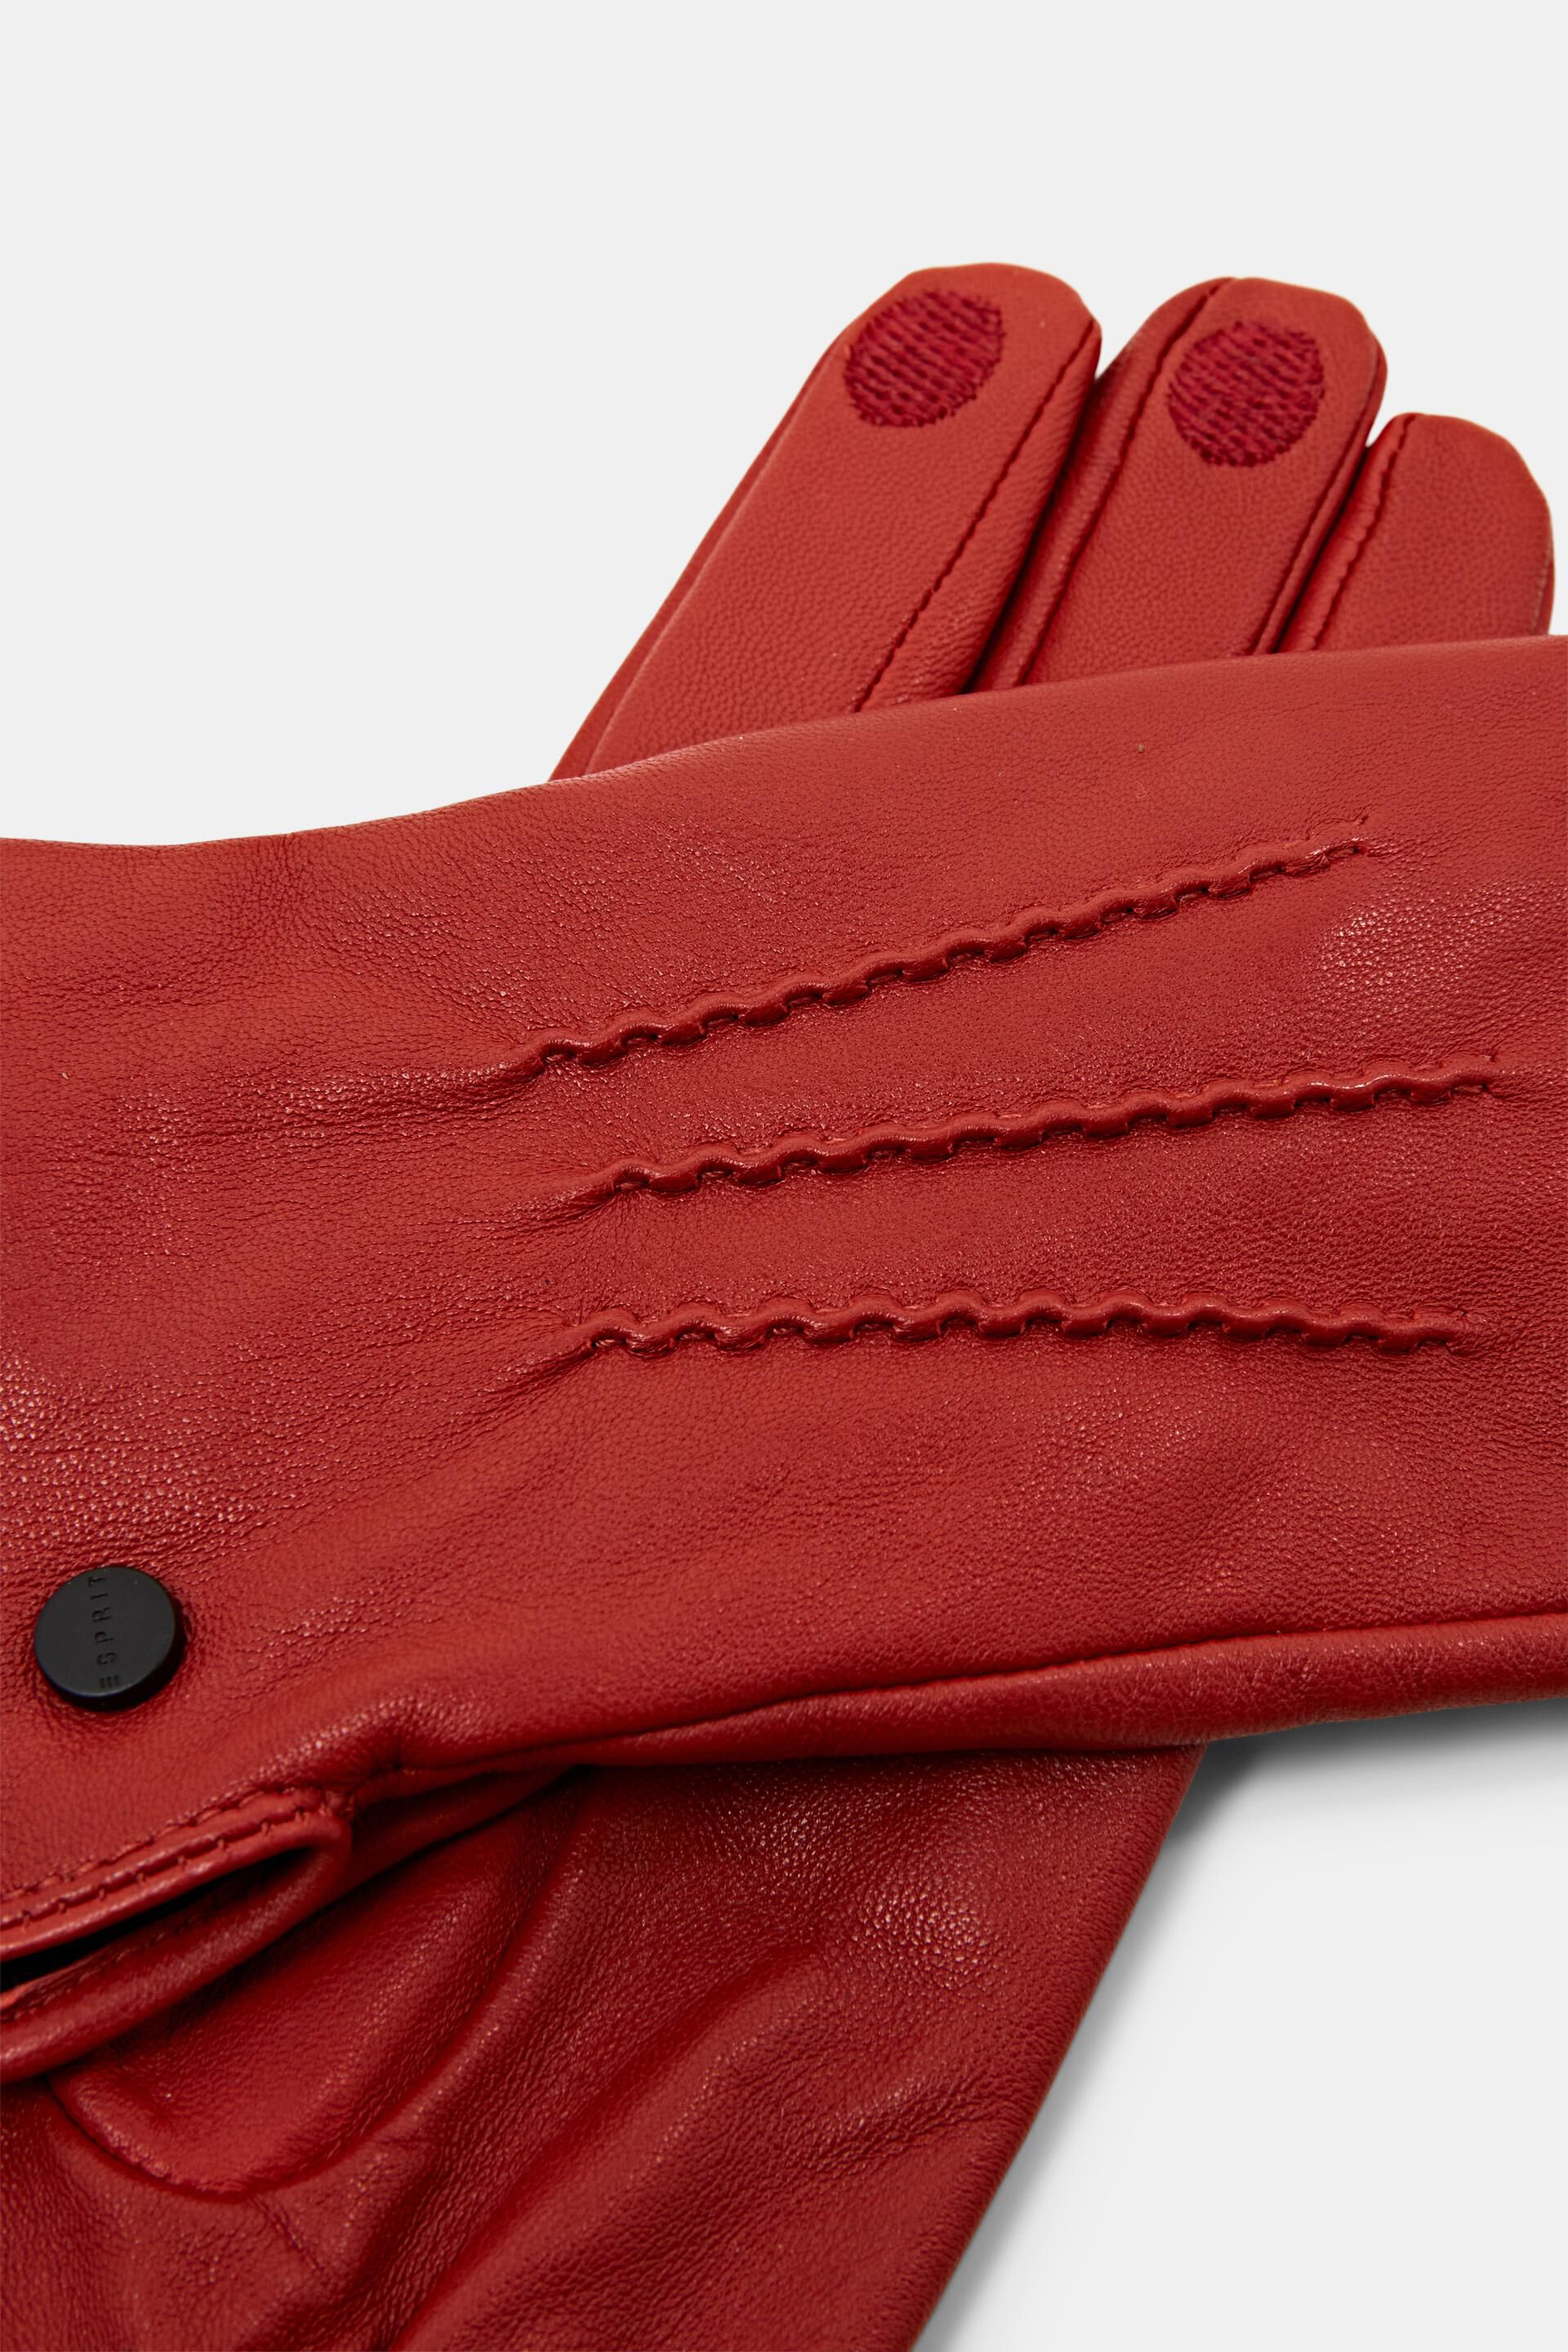 Oranje Gloves leather